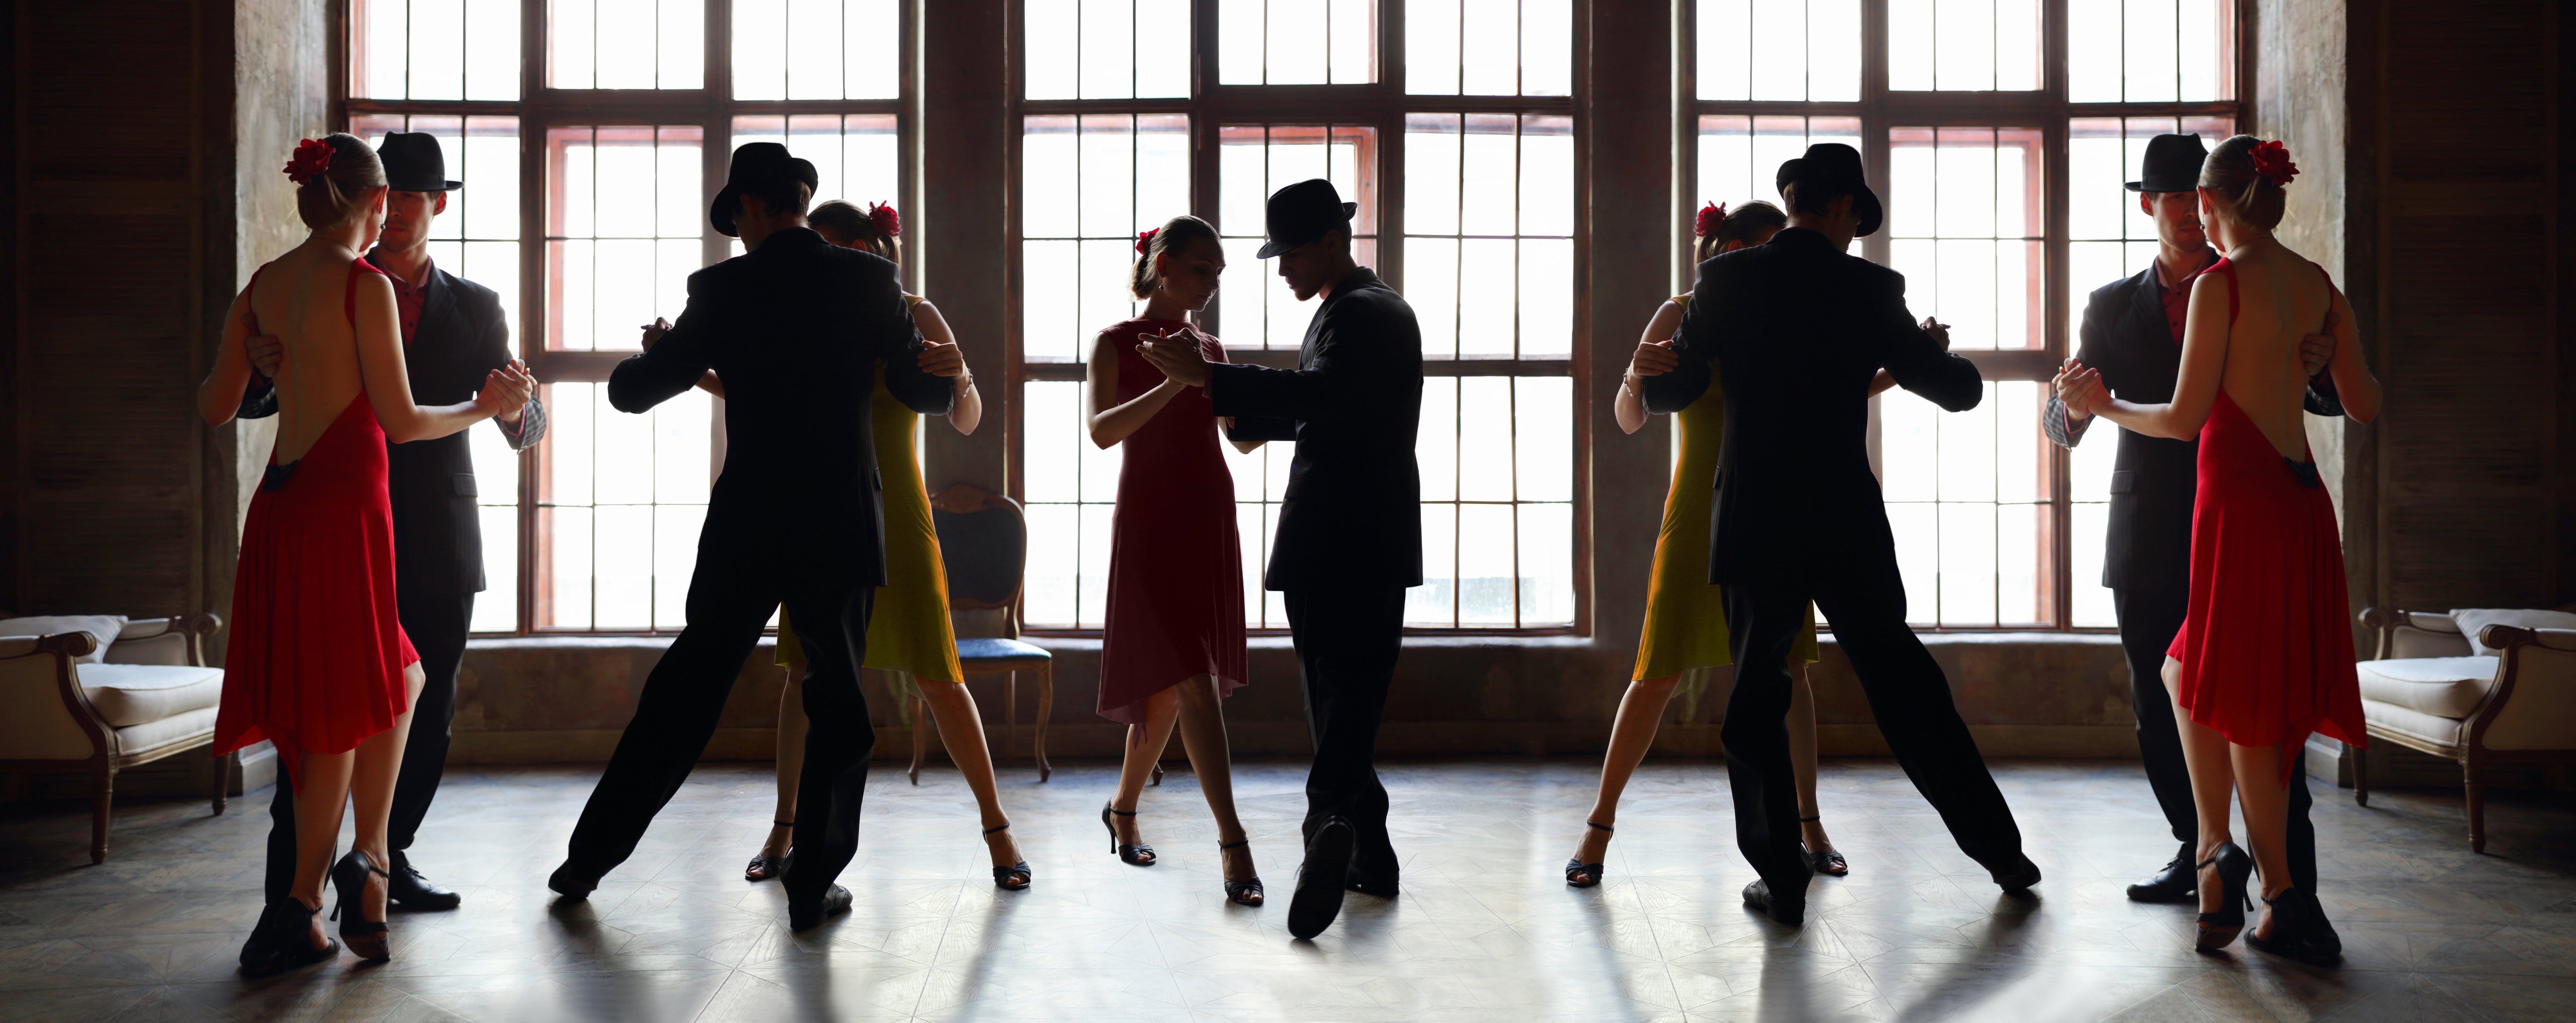 Estas son las claves para aprender a bailar tango como una experta